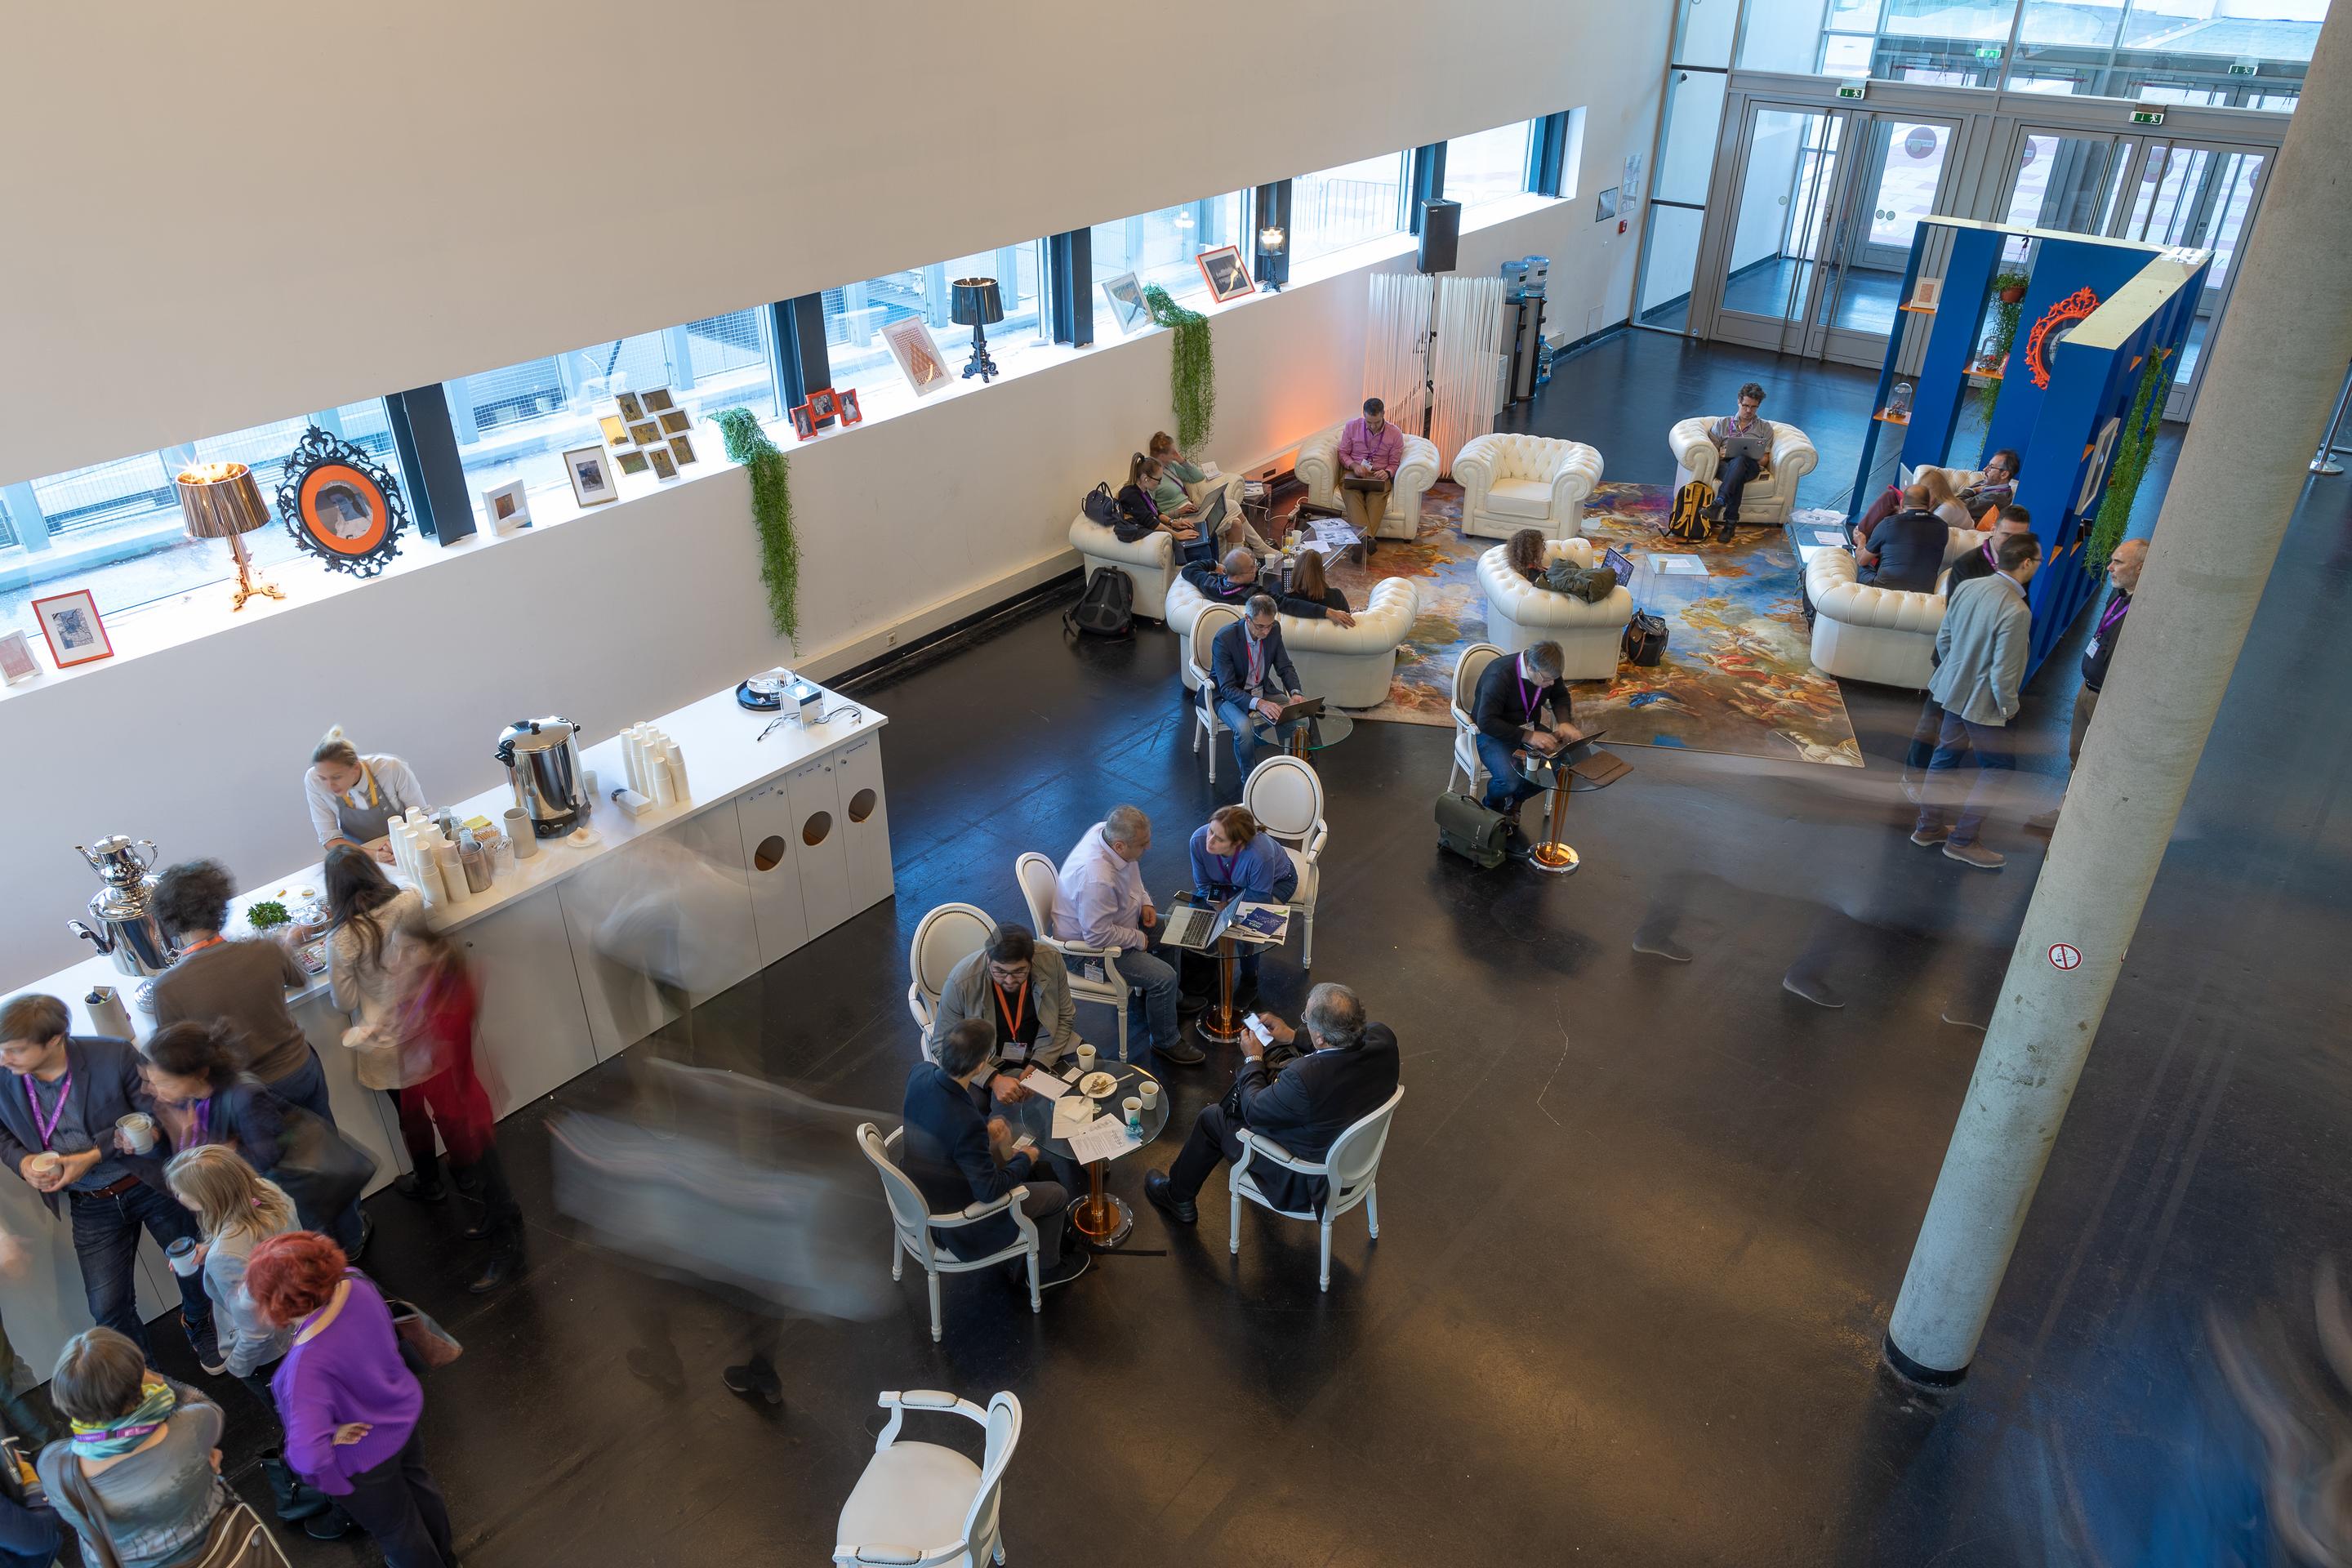 Foto: Cafebar und Menschen in Sitzgruppen in einer Halle